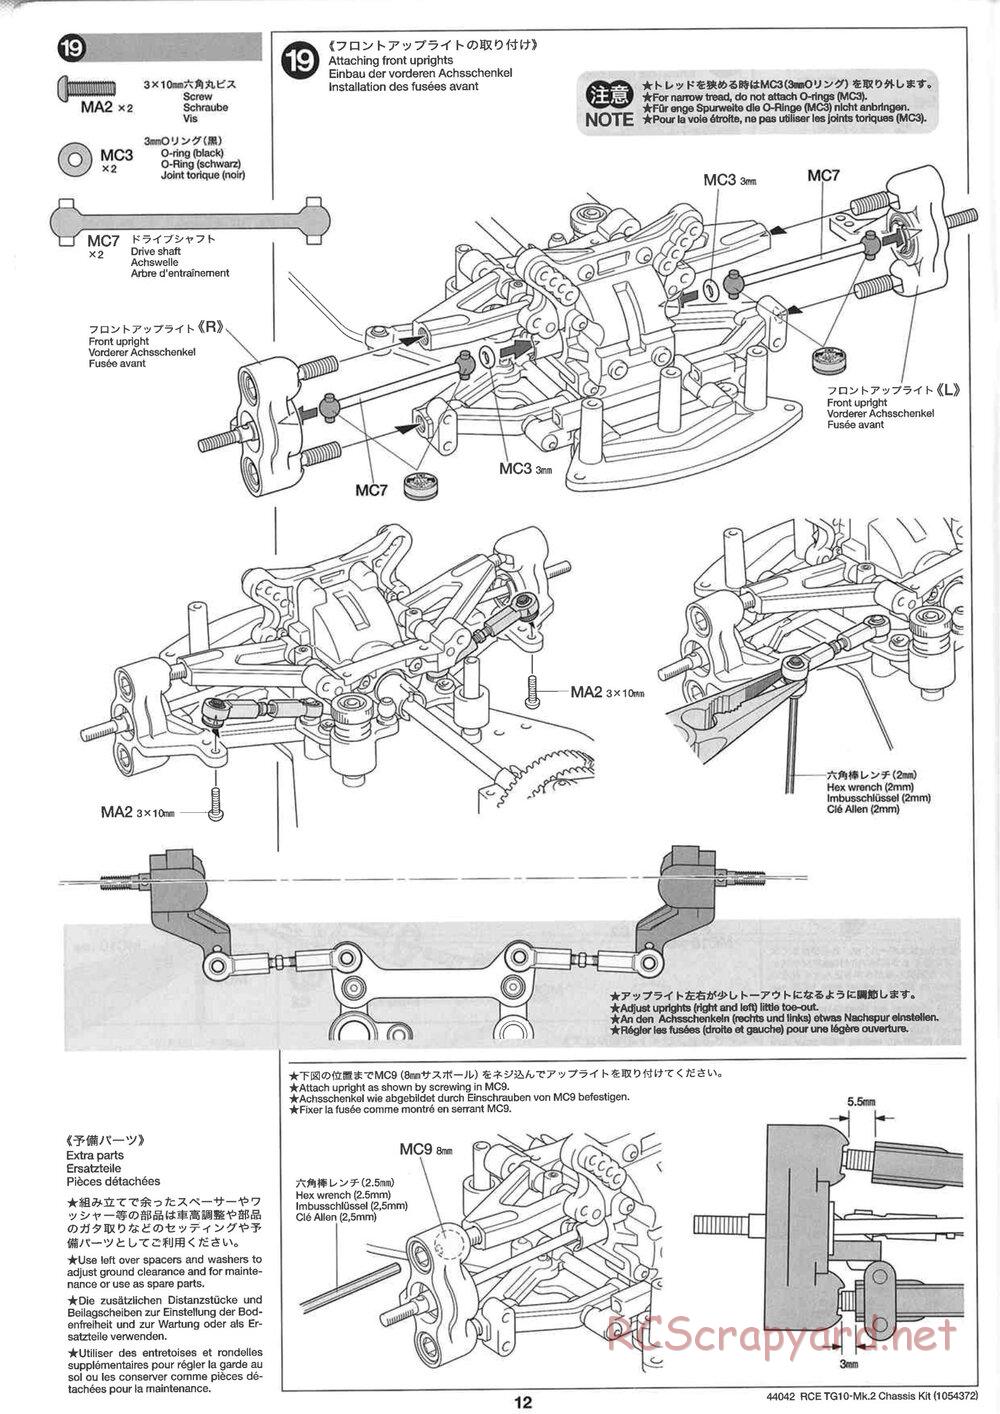 Tamiya - TG10 Mk.2 Chassis - Manual - Page 12